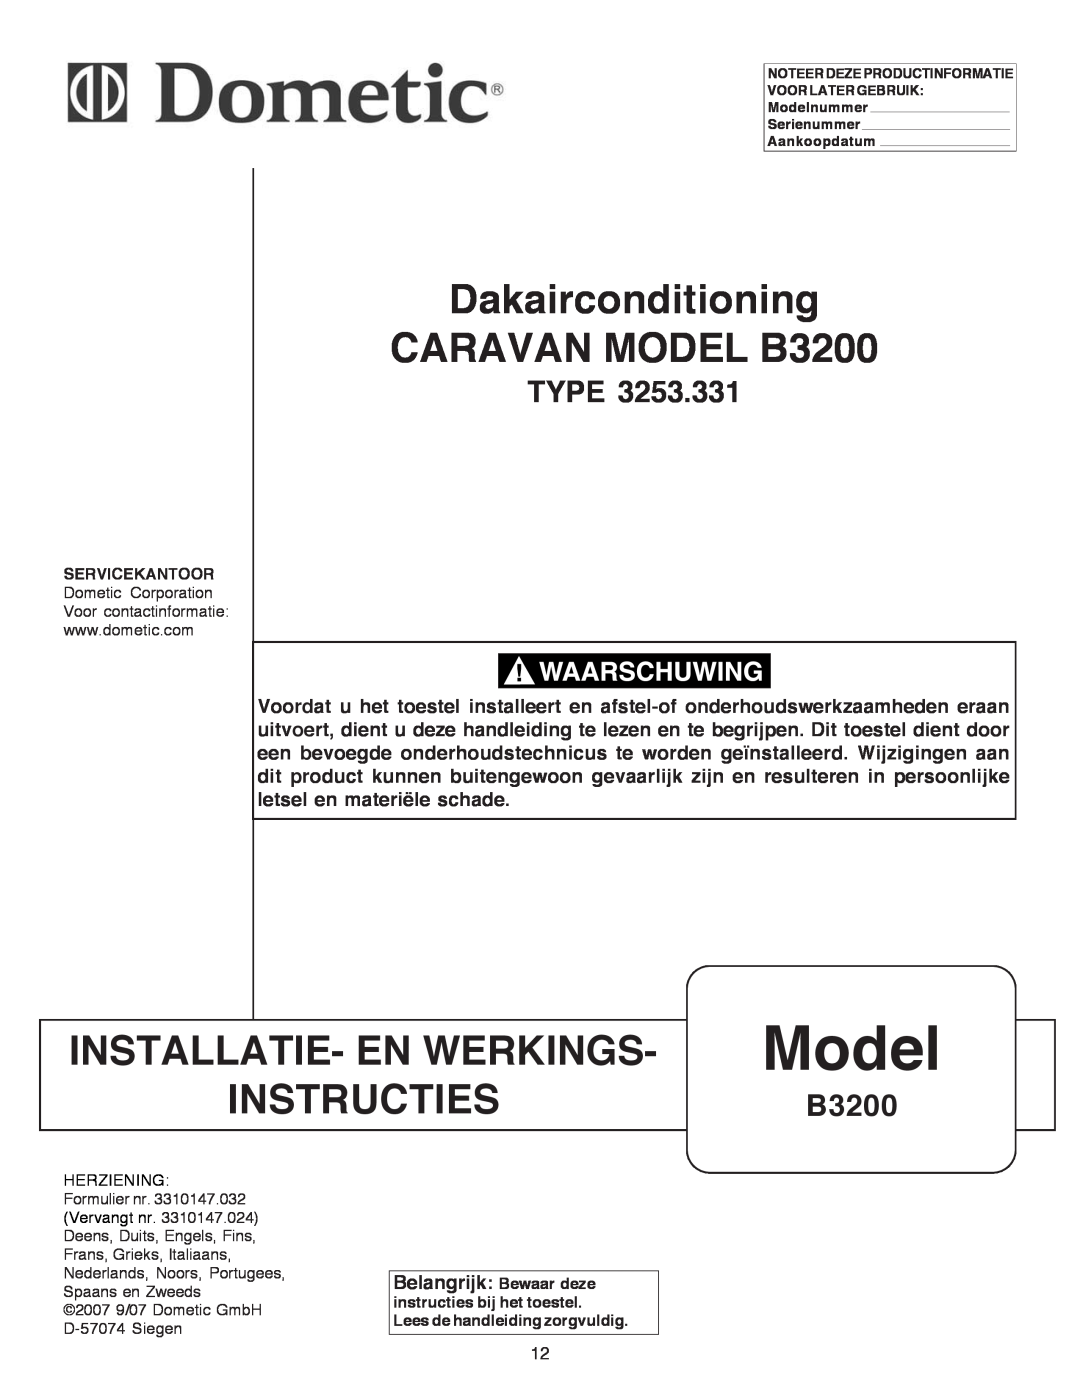 Dometic manual Dakairconditioning CARAVAN MODEL B3200, Installatie- En Werkings, Instructies, Model, Type 